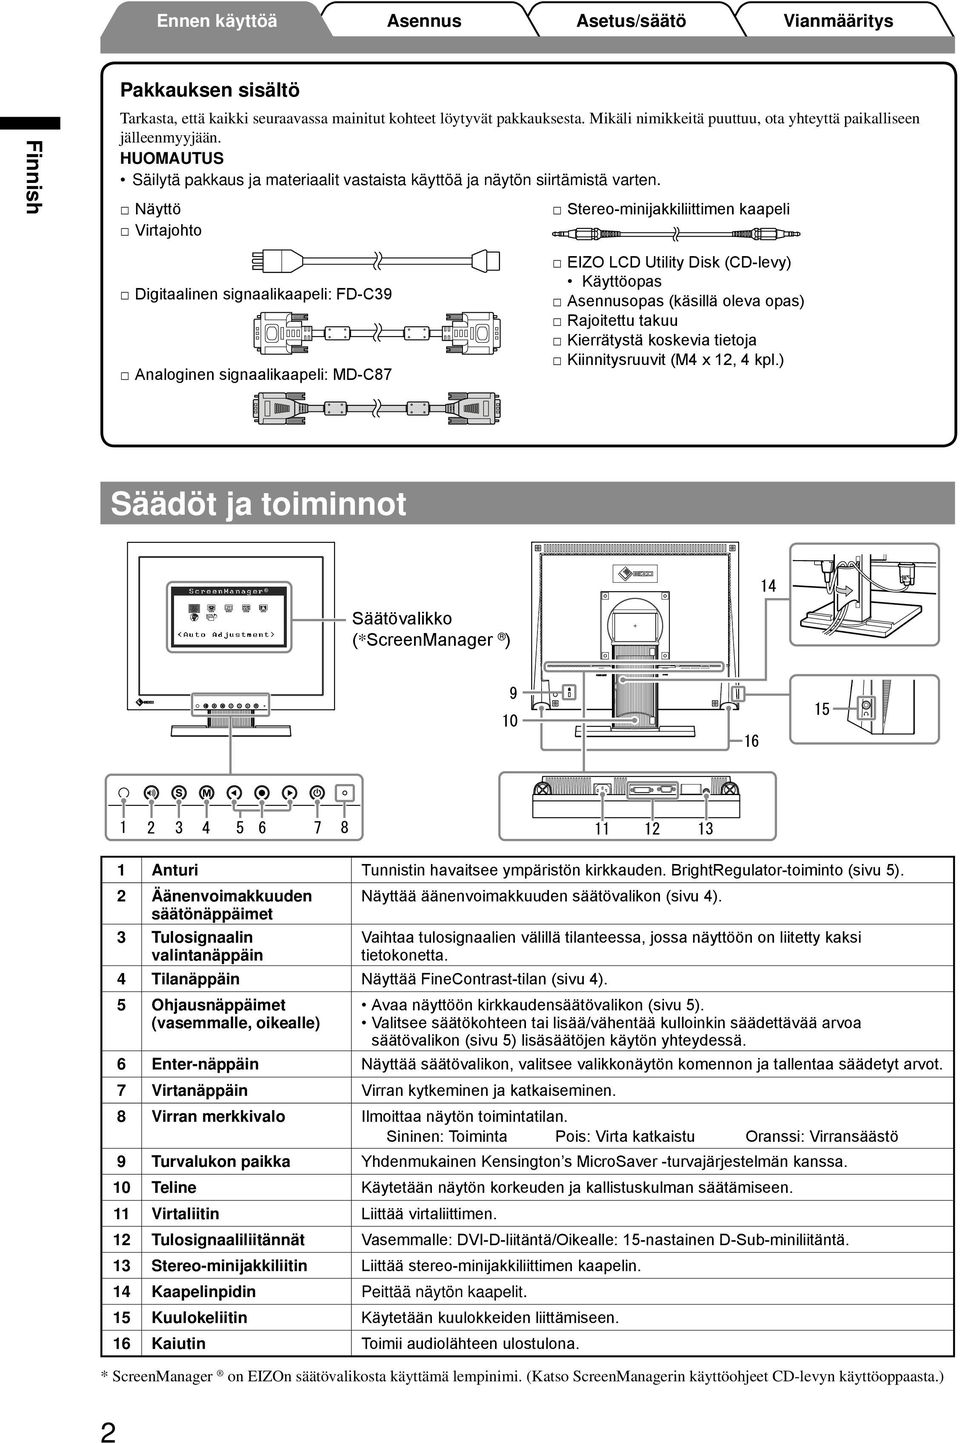 Näyttö Virtajohto Stereo-minijakkiliittimen kaapeli Digitaalinen signaalikaapeli: FD-C39 Analoginen signaalikaapeli: MD-C87 EIZO LCD Utility Disk (CD-levy) Käyttöopas opas (käsillä oleva opas)